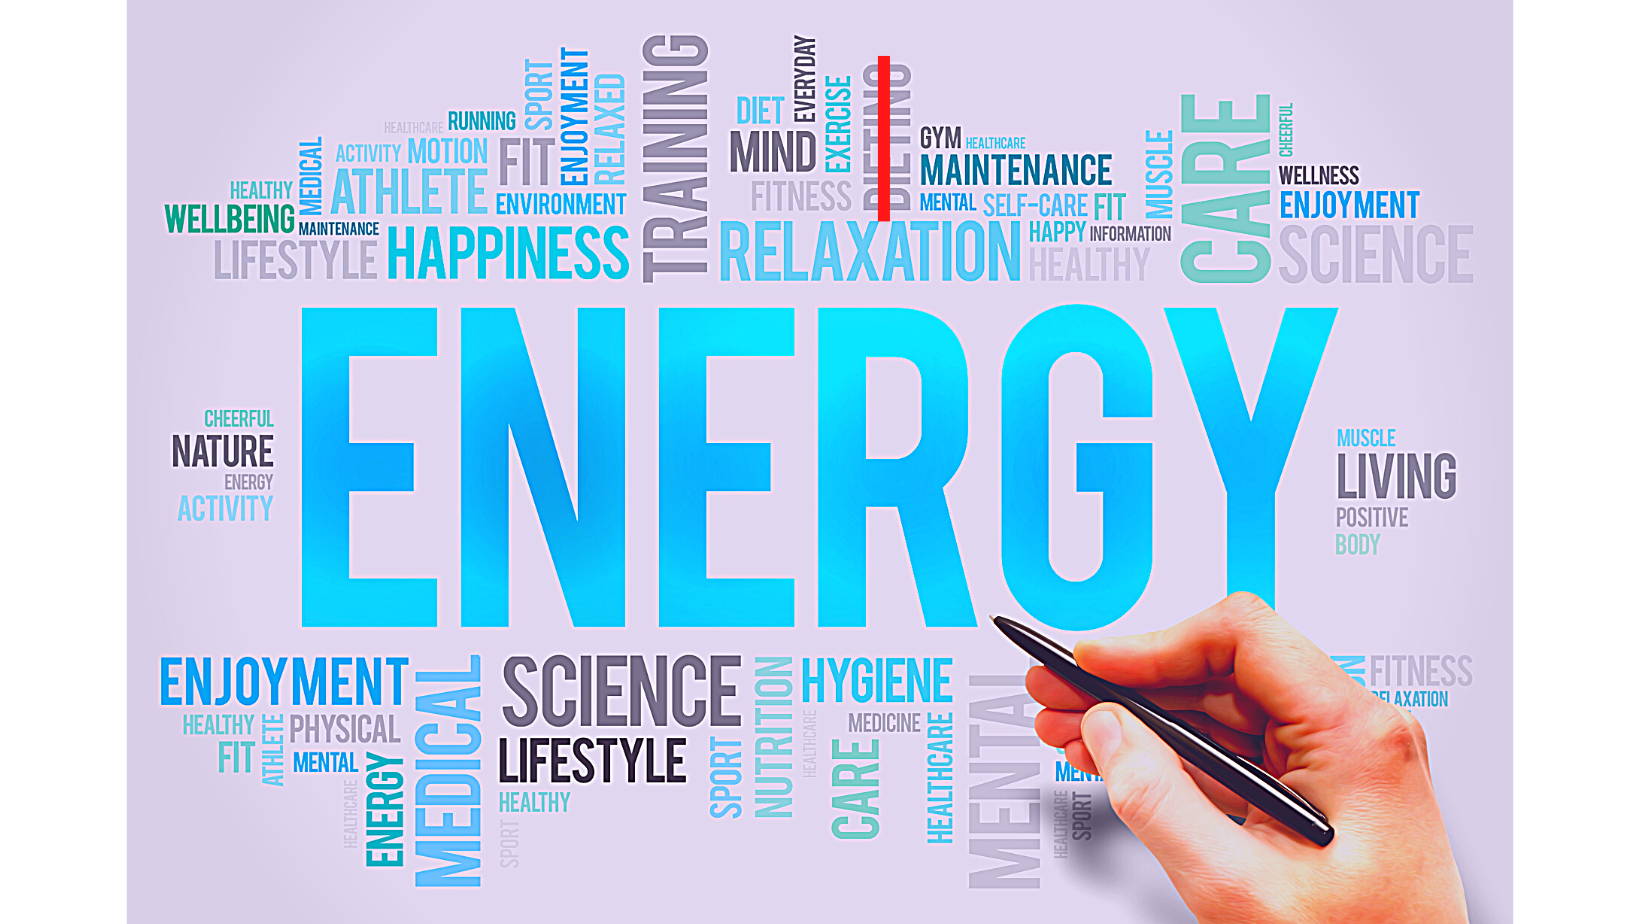 Keys to Energetic Health